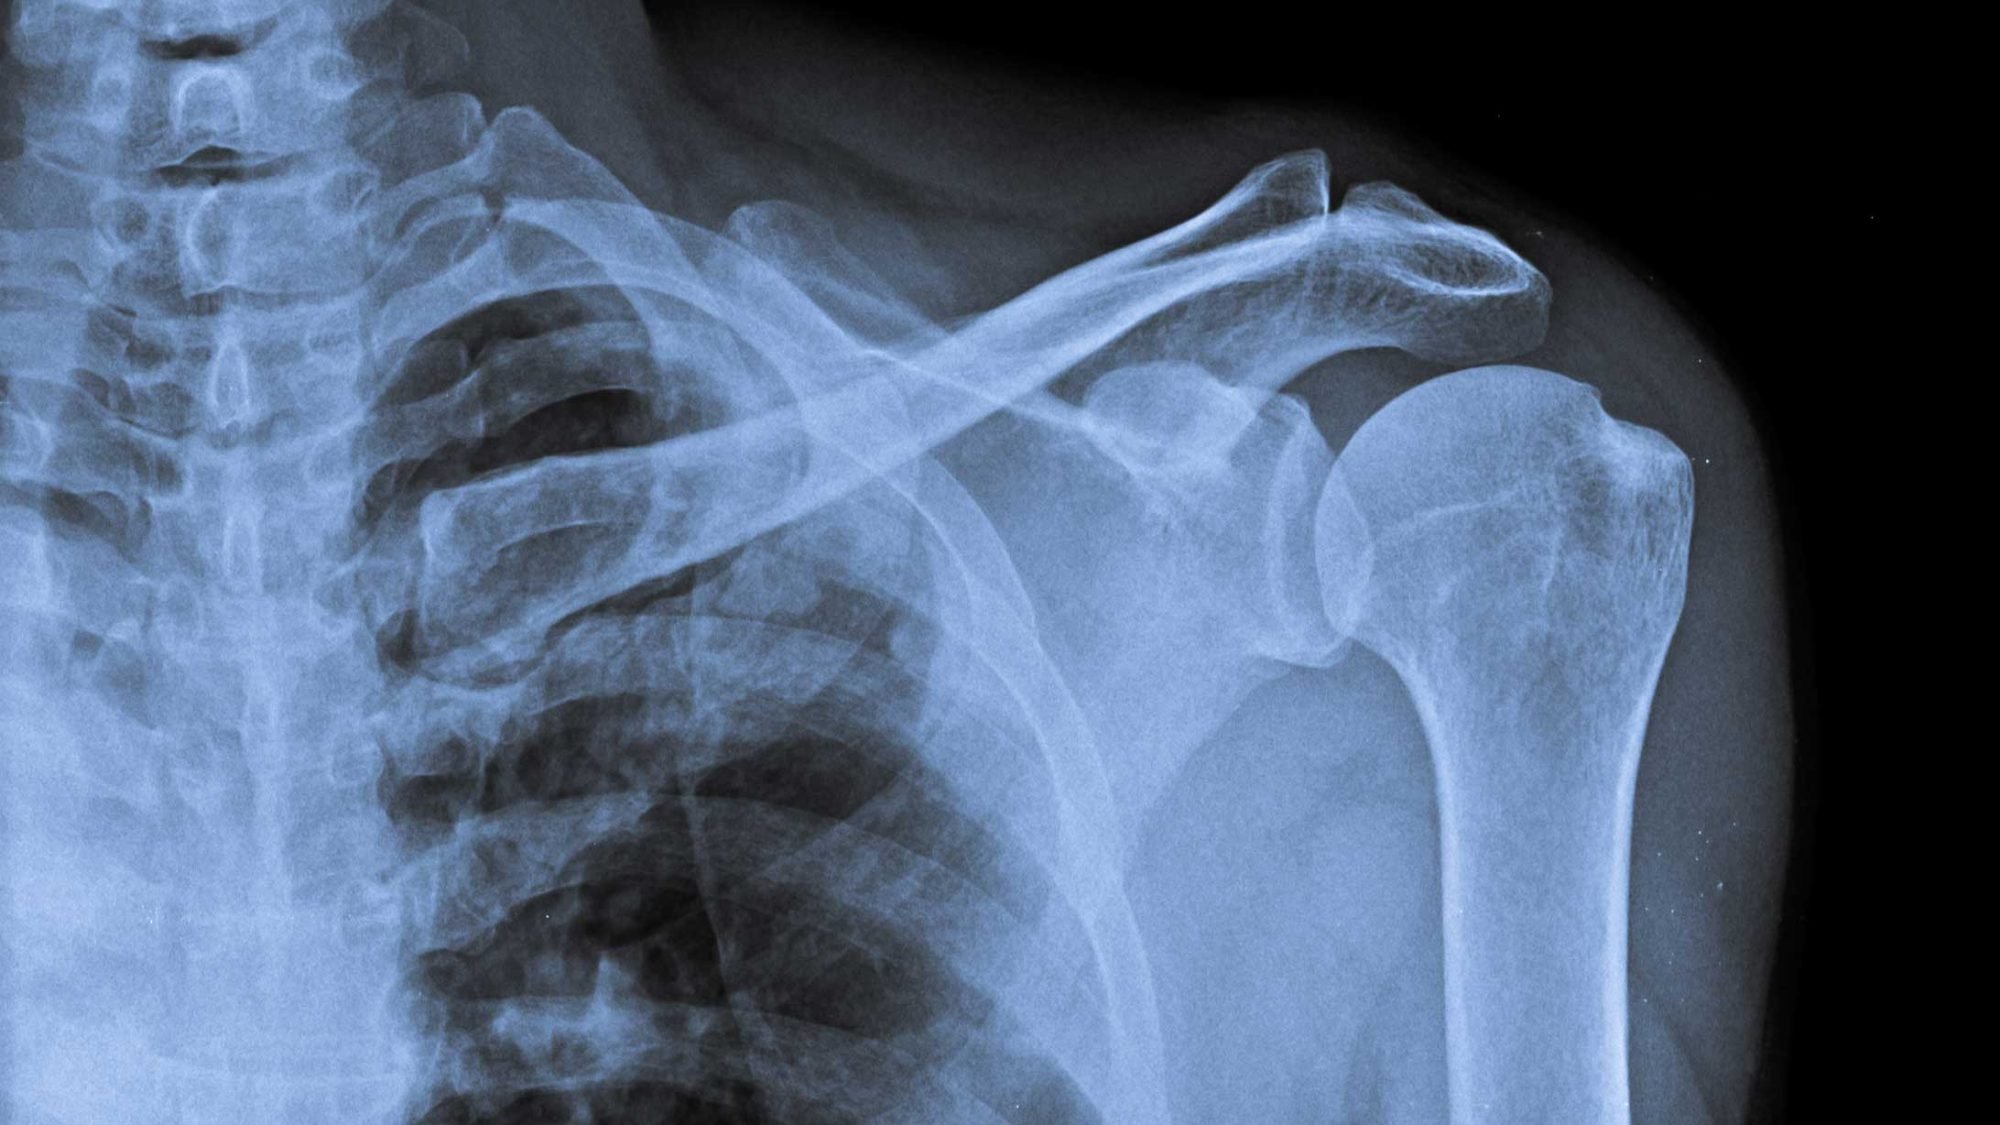 Röntgenbild eines Schultergelenks